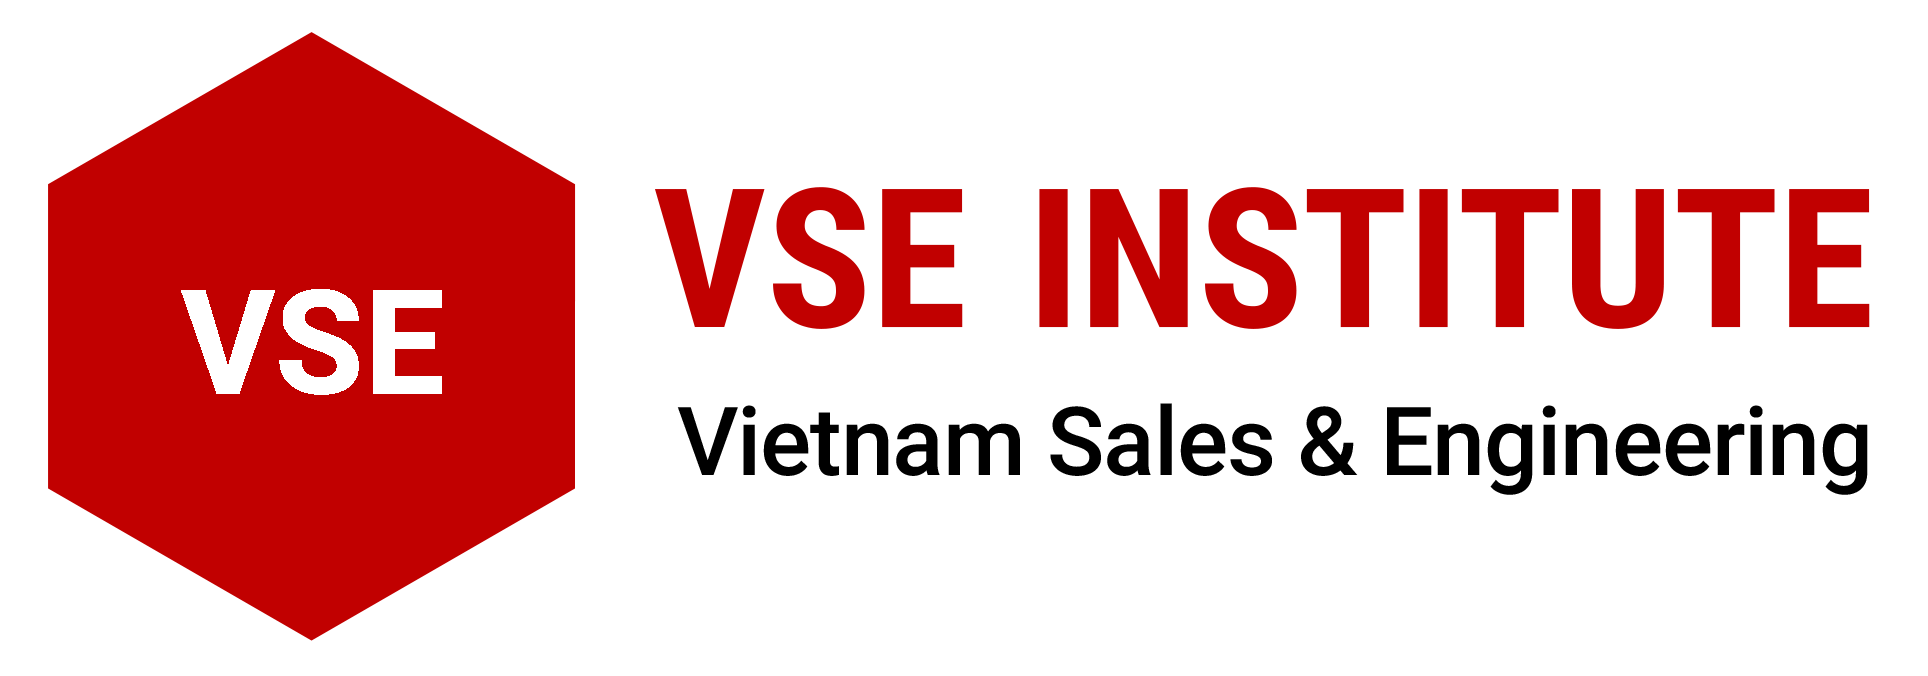 VSE Institute